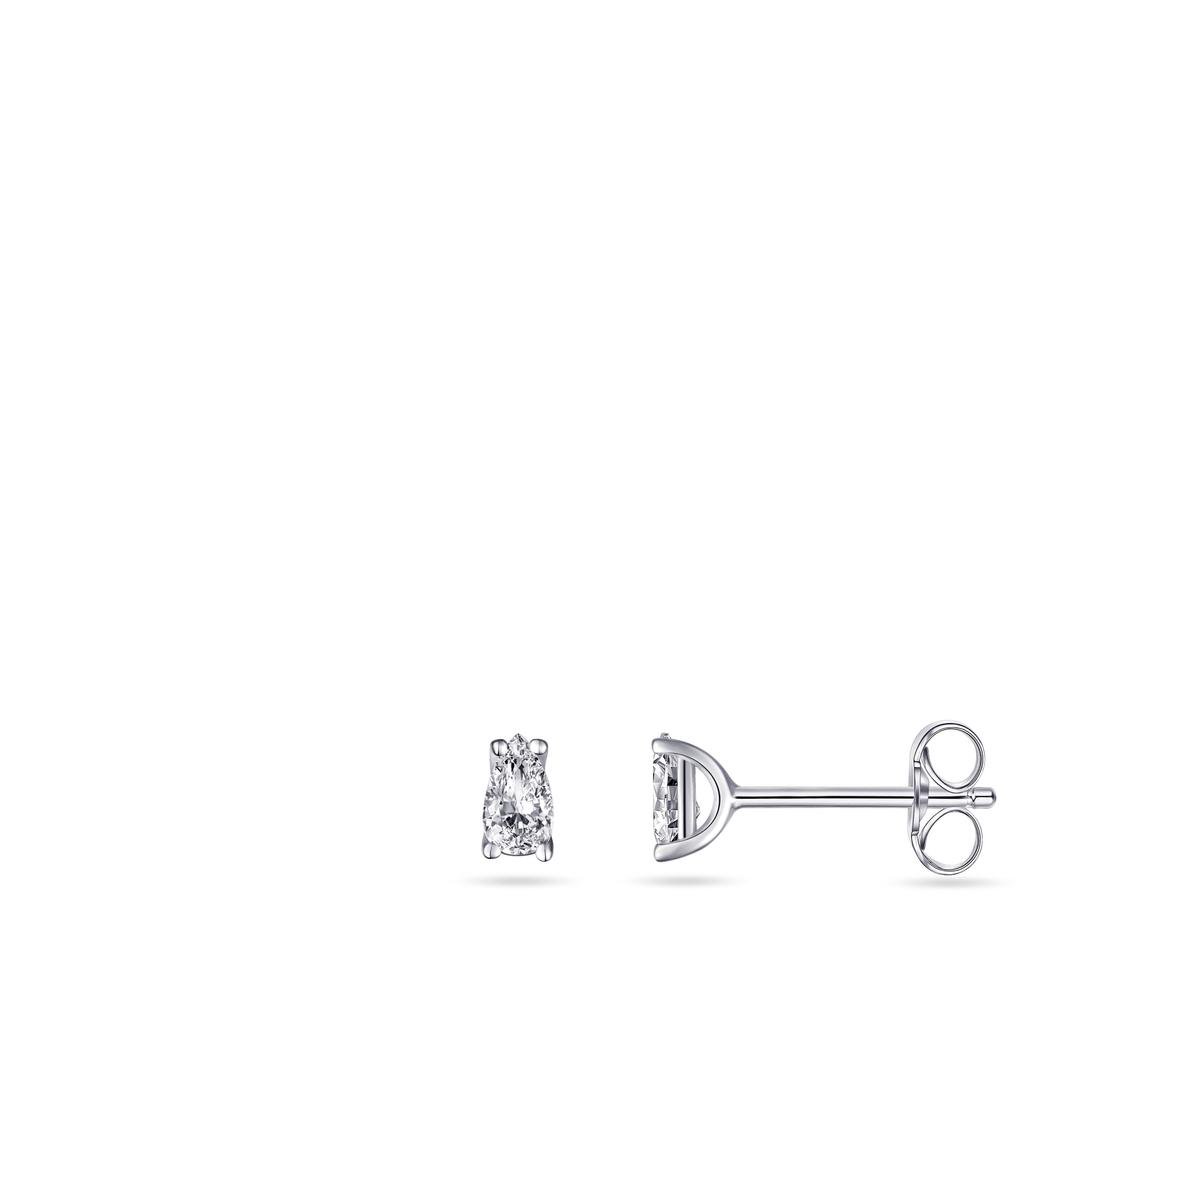 Jewels Inc. - Oorsteker - Solitaire gezet met een Peer geslepen Zirkonia Steen - 5mm x 3mm - Gerhodineerd Zilver 925